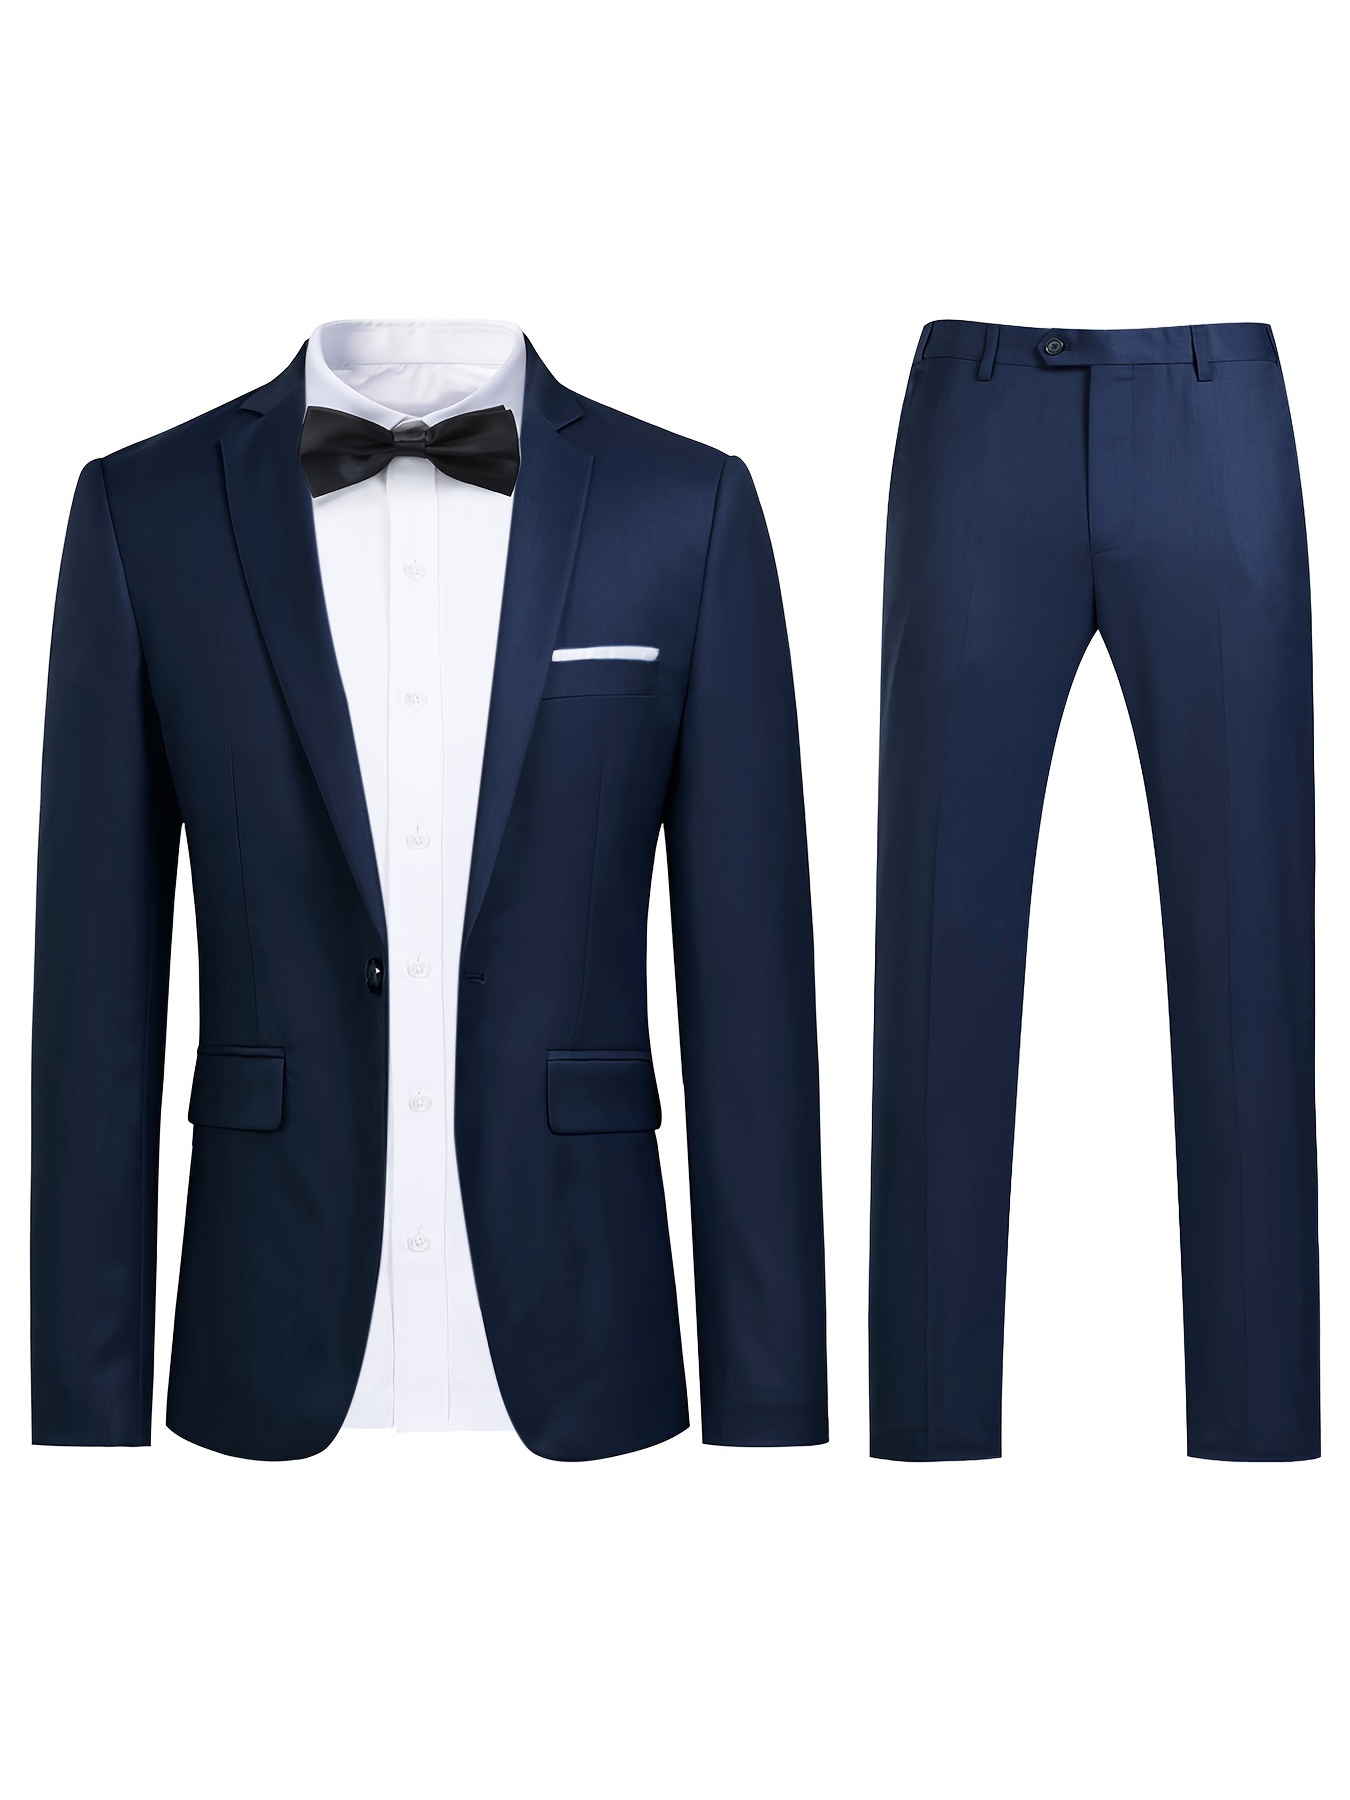 MY'S Men's 3 Piece Solid Suit Set, One Button Slim Fit Jacket Vest Pants  with Tie